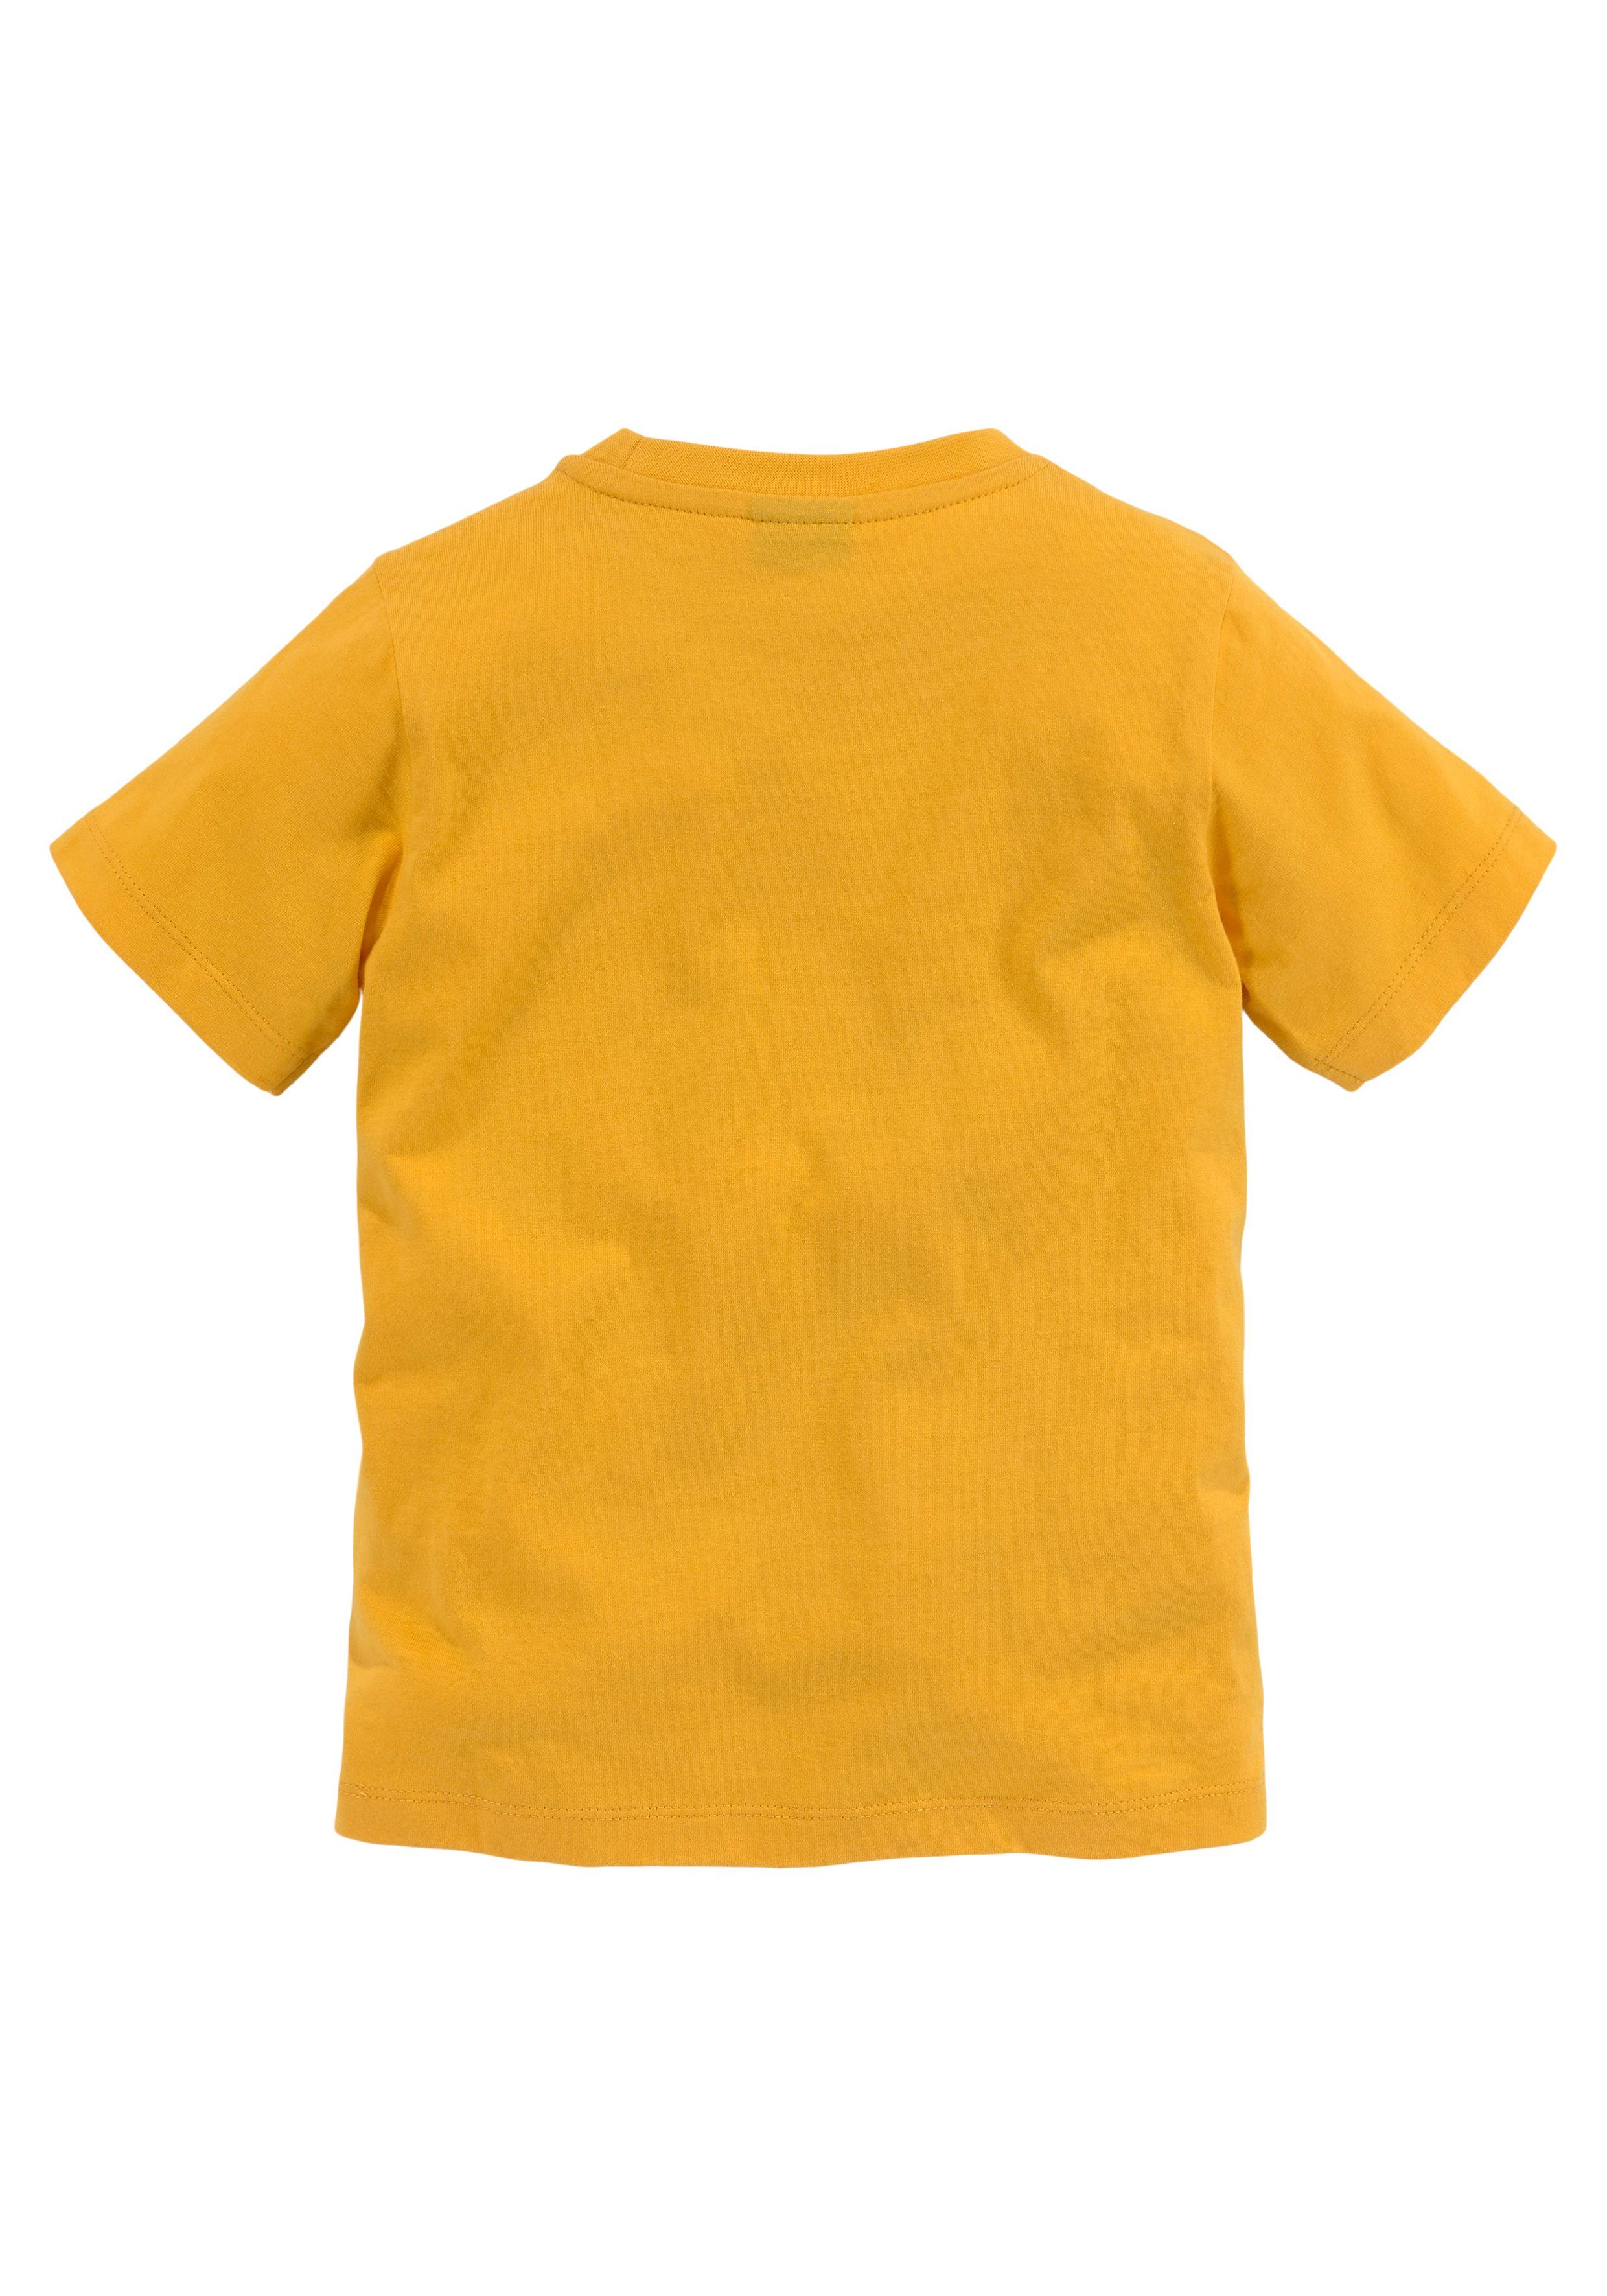 LITTLE KIDSWORLD TIGER T-Shirt